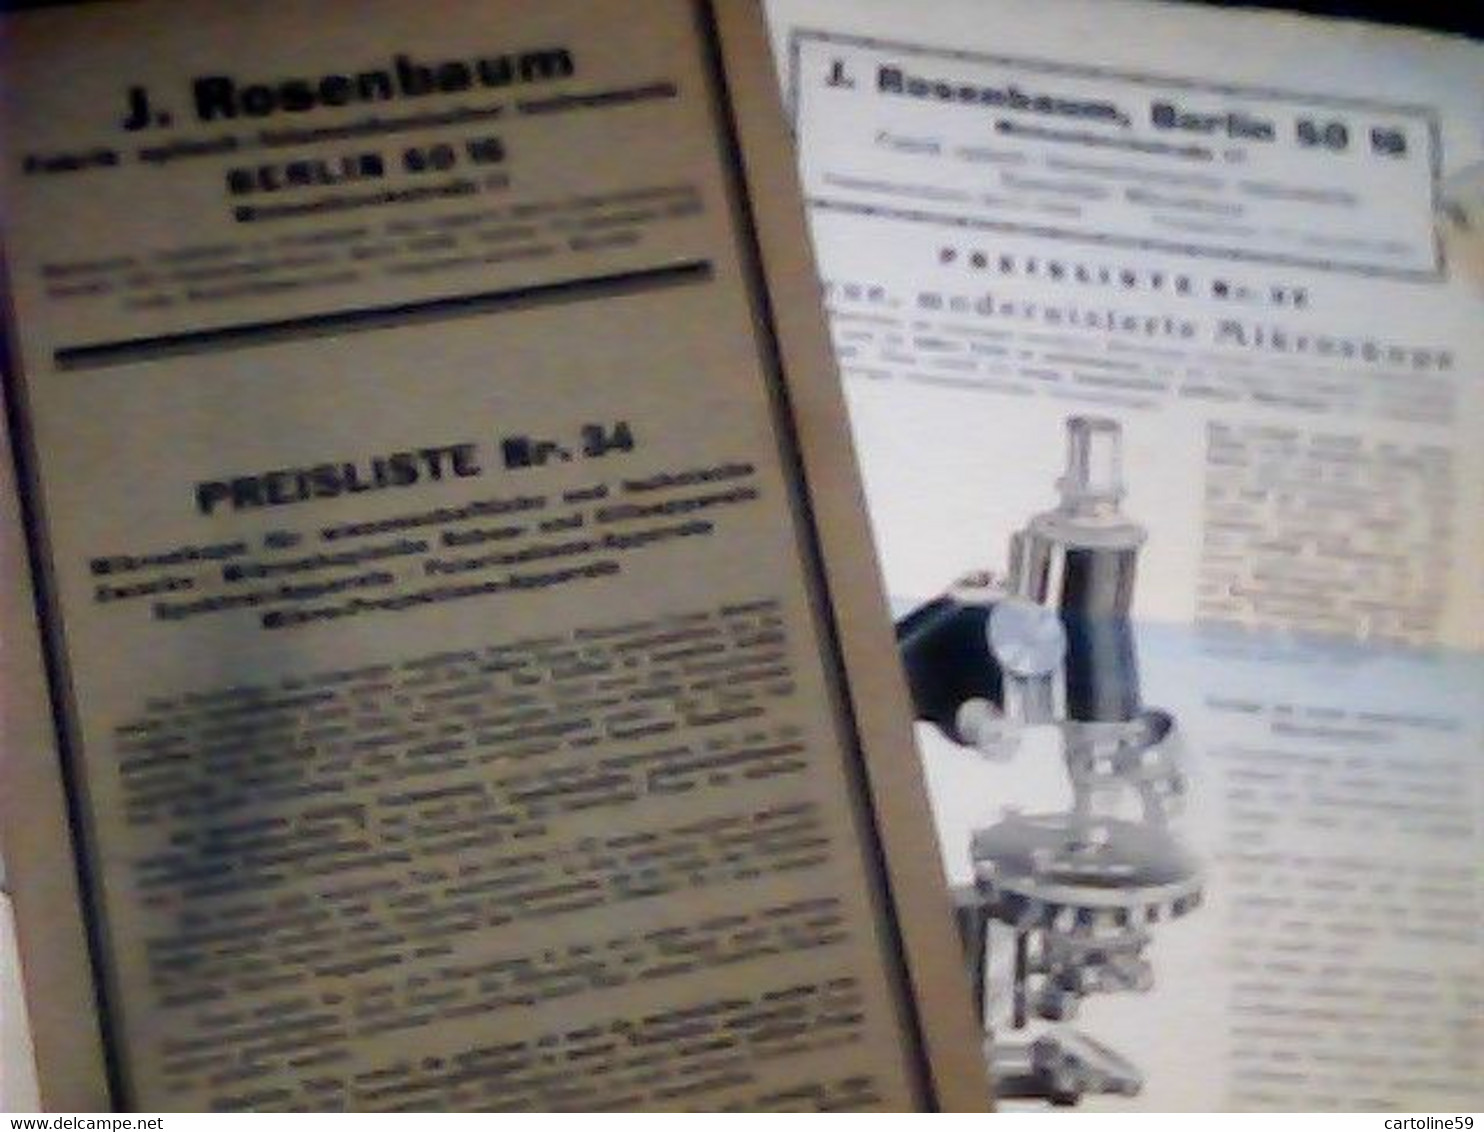 LIBRETTO MICROSCOPIO ROSENBAUM BERLIN FABRIK OPTISCH MIKROSKOP PREISLISTELETTER 1932 IQ8312 - Catalogi